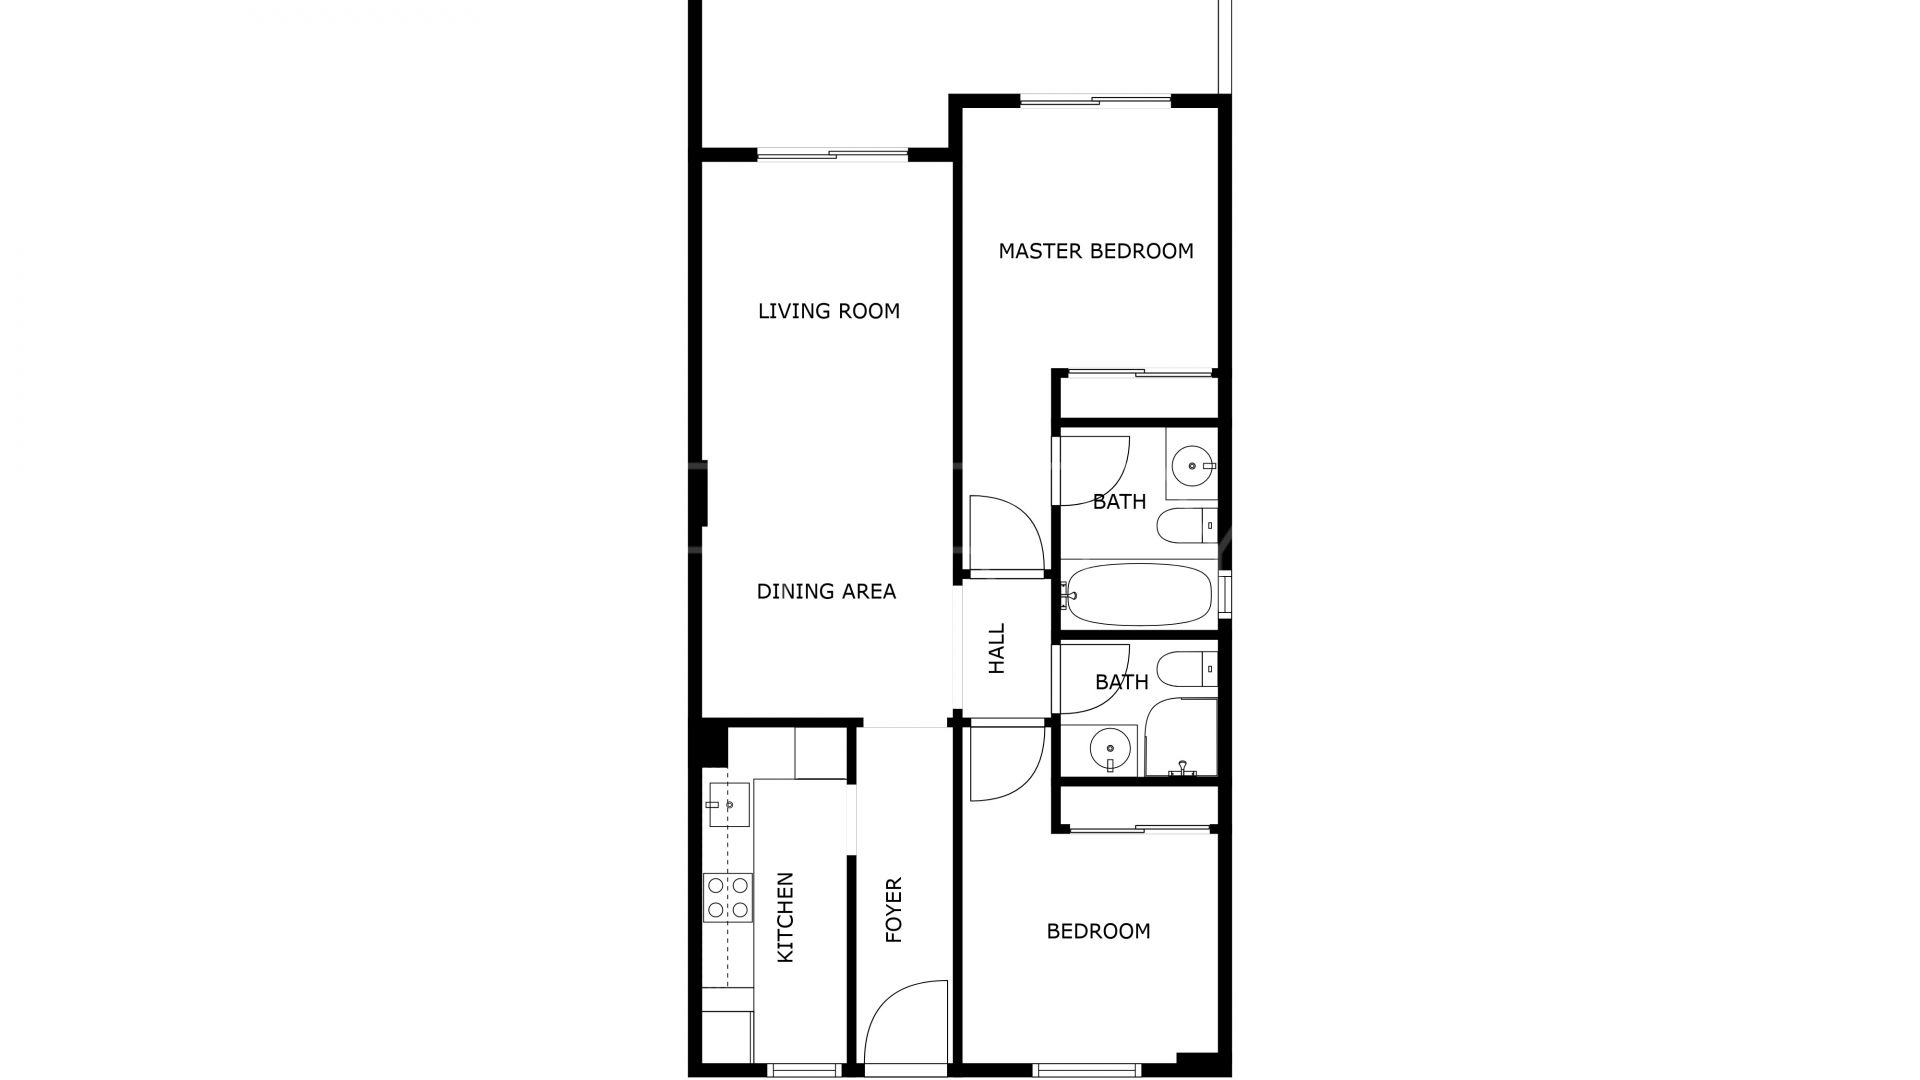 2 bedrooms ground floor apartment in Cala de Mijas for sale